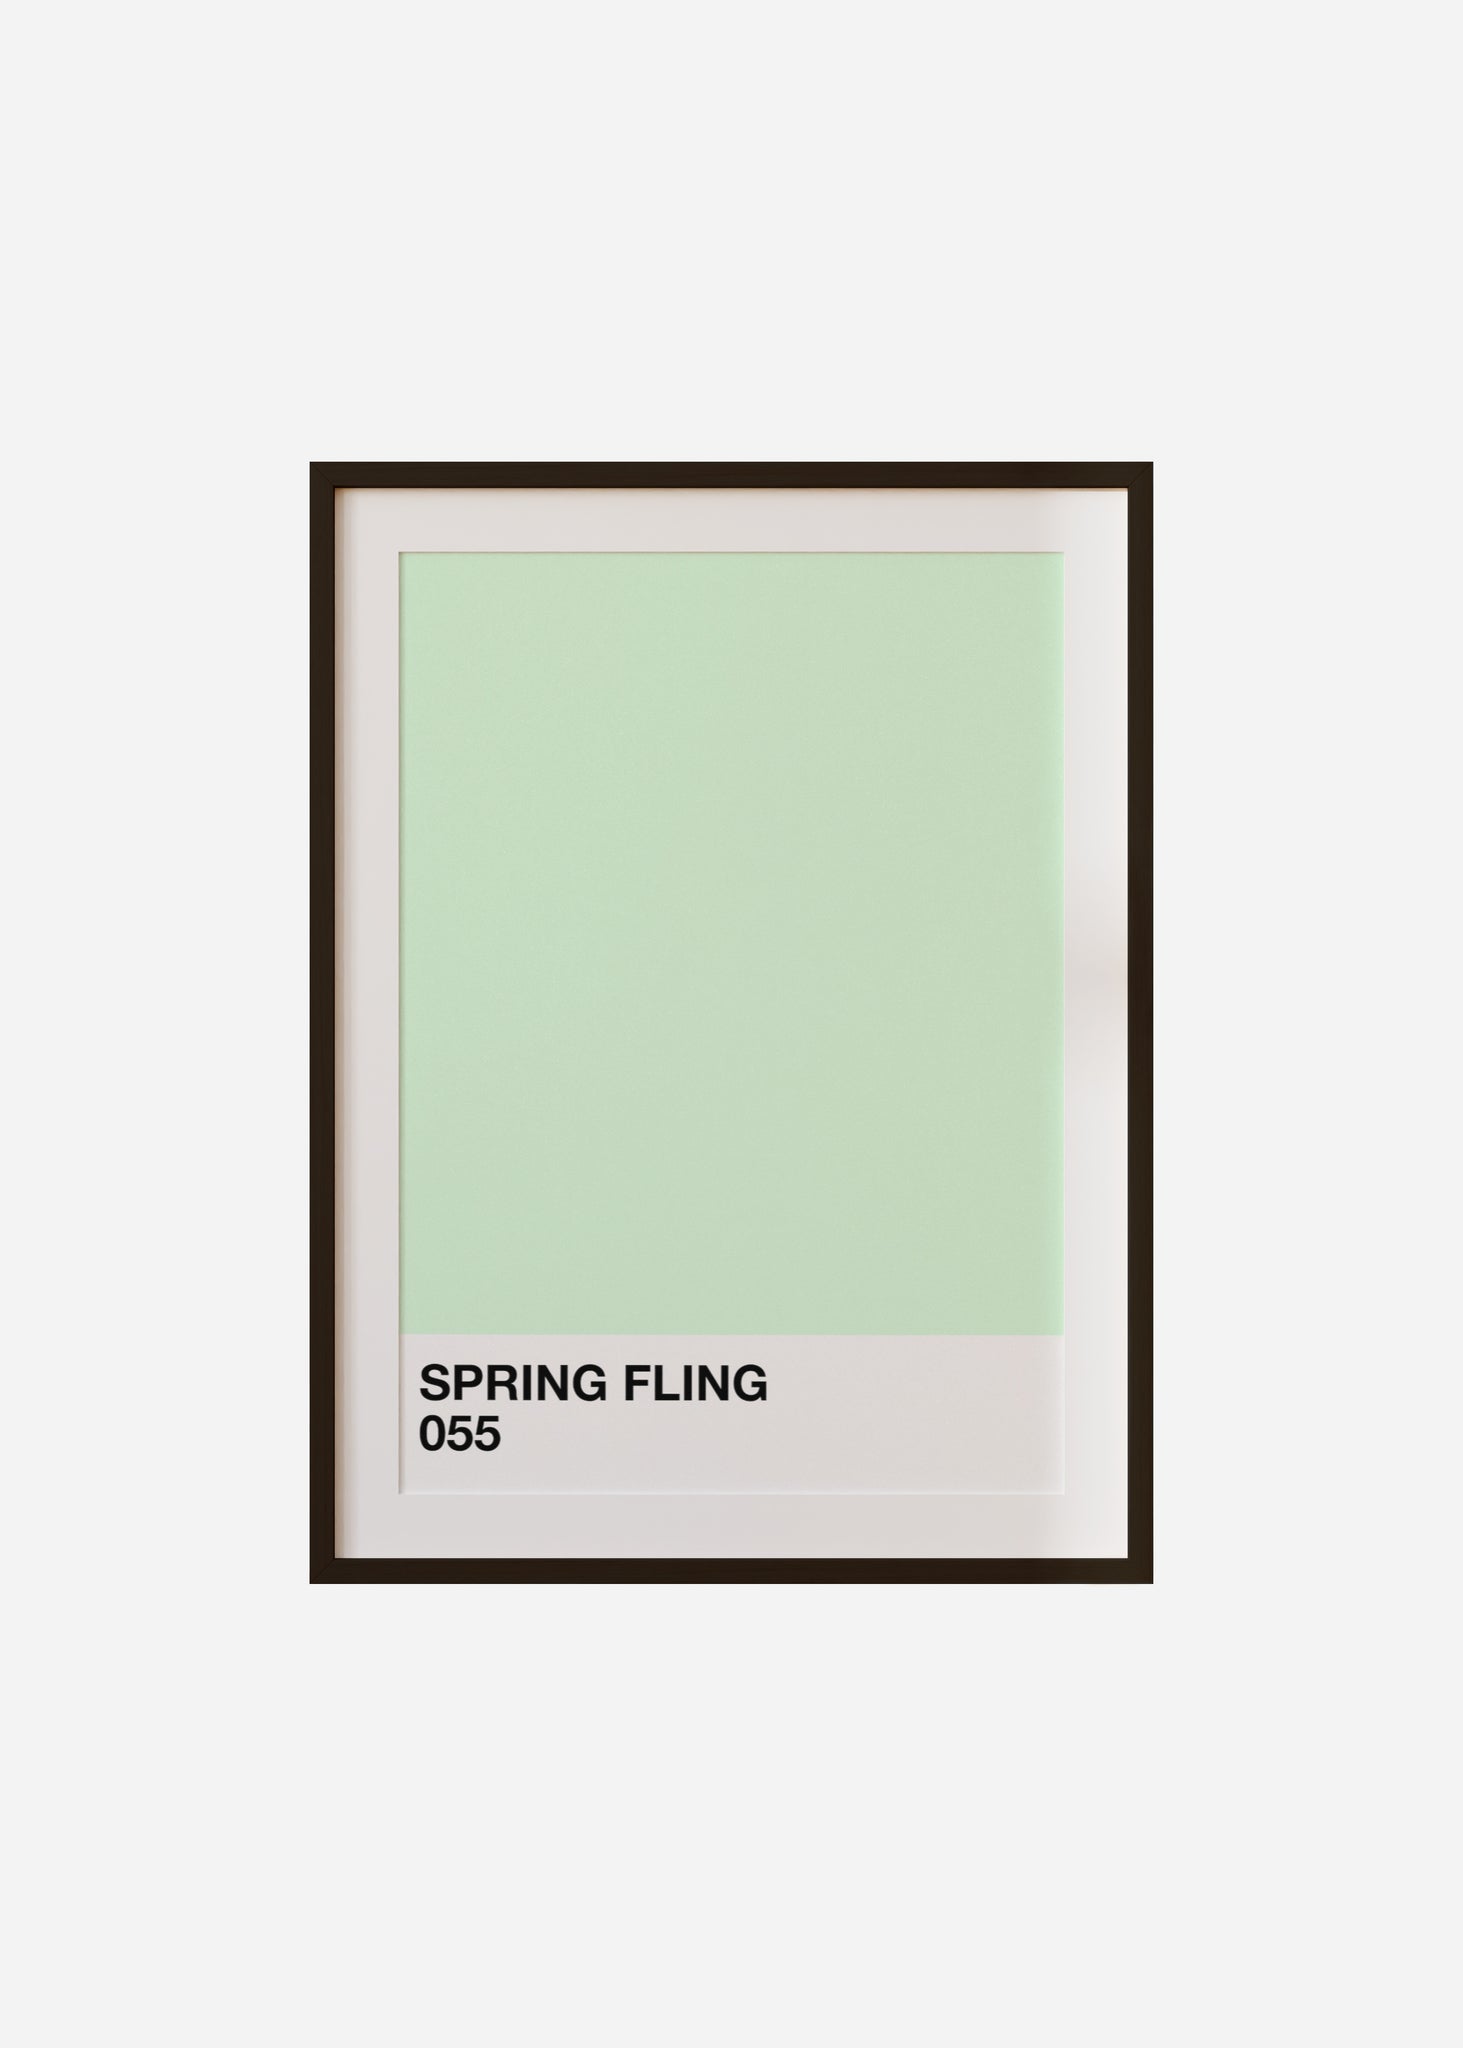 spring fling Framed & Mounted Print